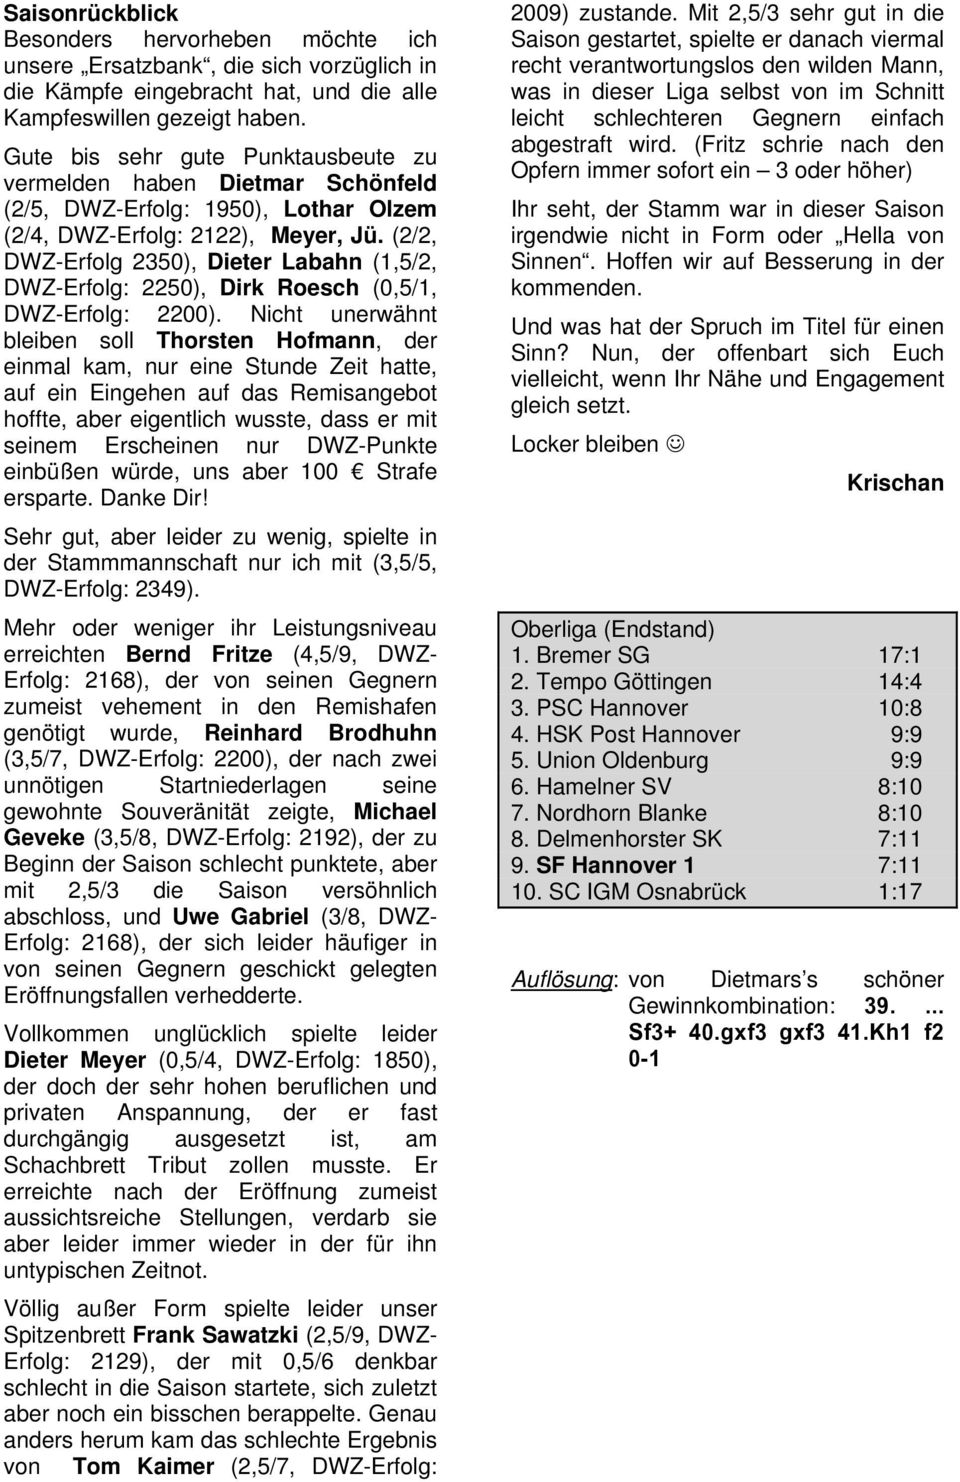 (2/2, DWZ-Erfolg 2350), Dieter Labahn (1,5/2, DWZ-Erfolg: 2250), Dirk Roesch (0,5/1, DWZ-Erfolg: 2200).